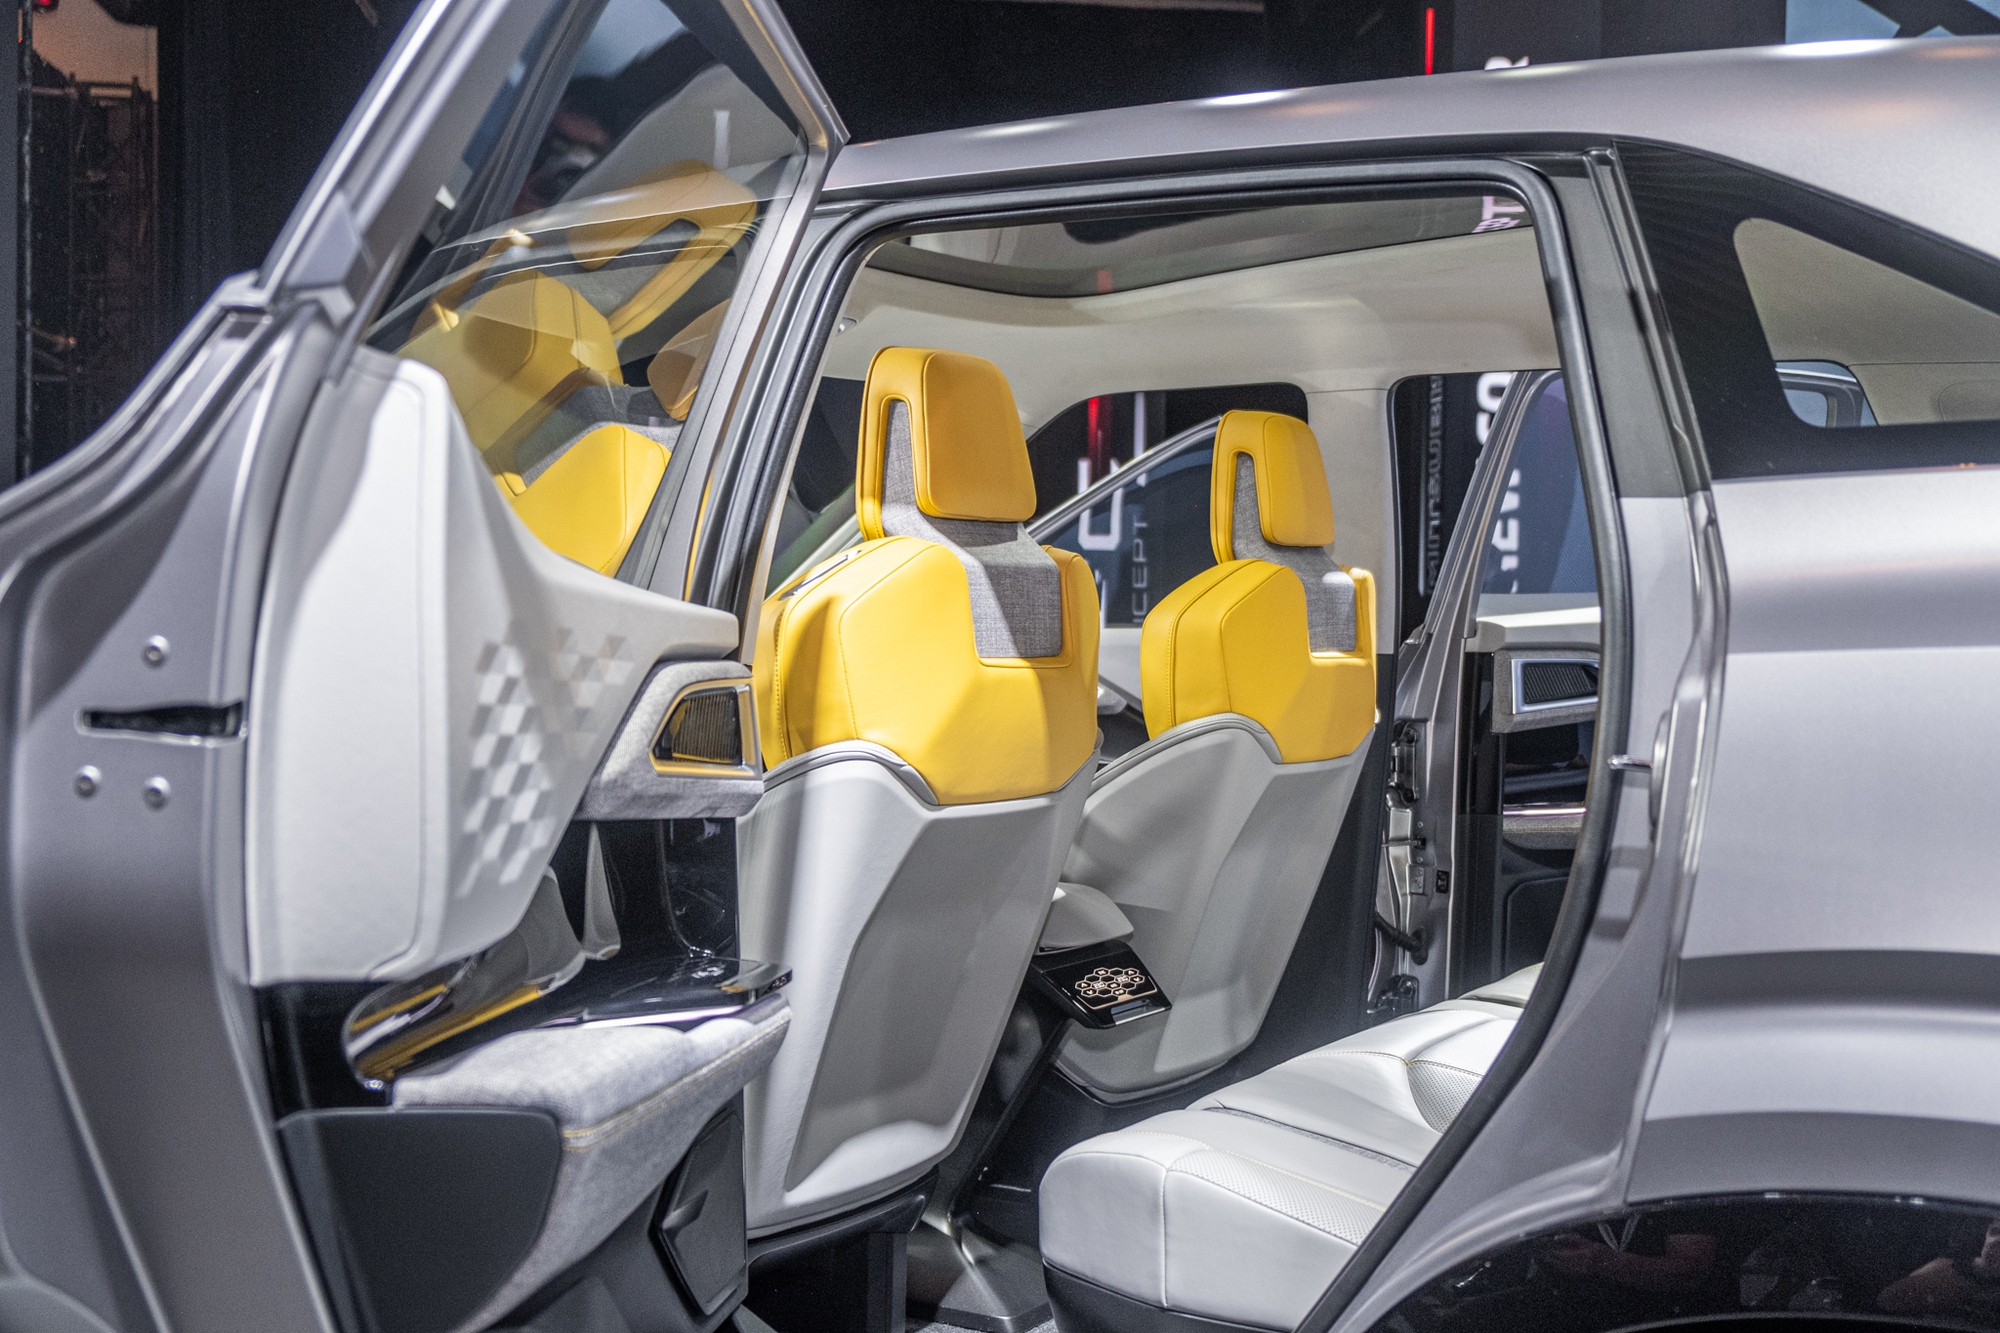 Đại lý đã nhận cọc Mitsubishi XFC Concept: Giá dự kiến 700-800 triệu đồng, giao xe giữa năm sau - Ảnh 4.